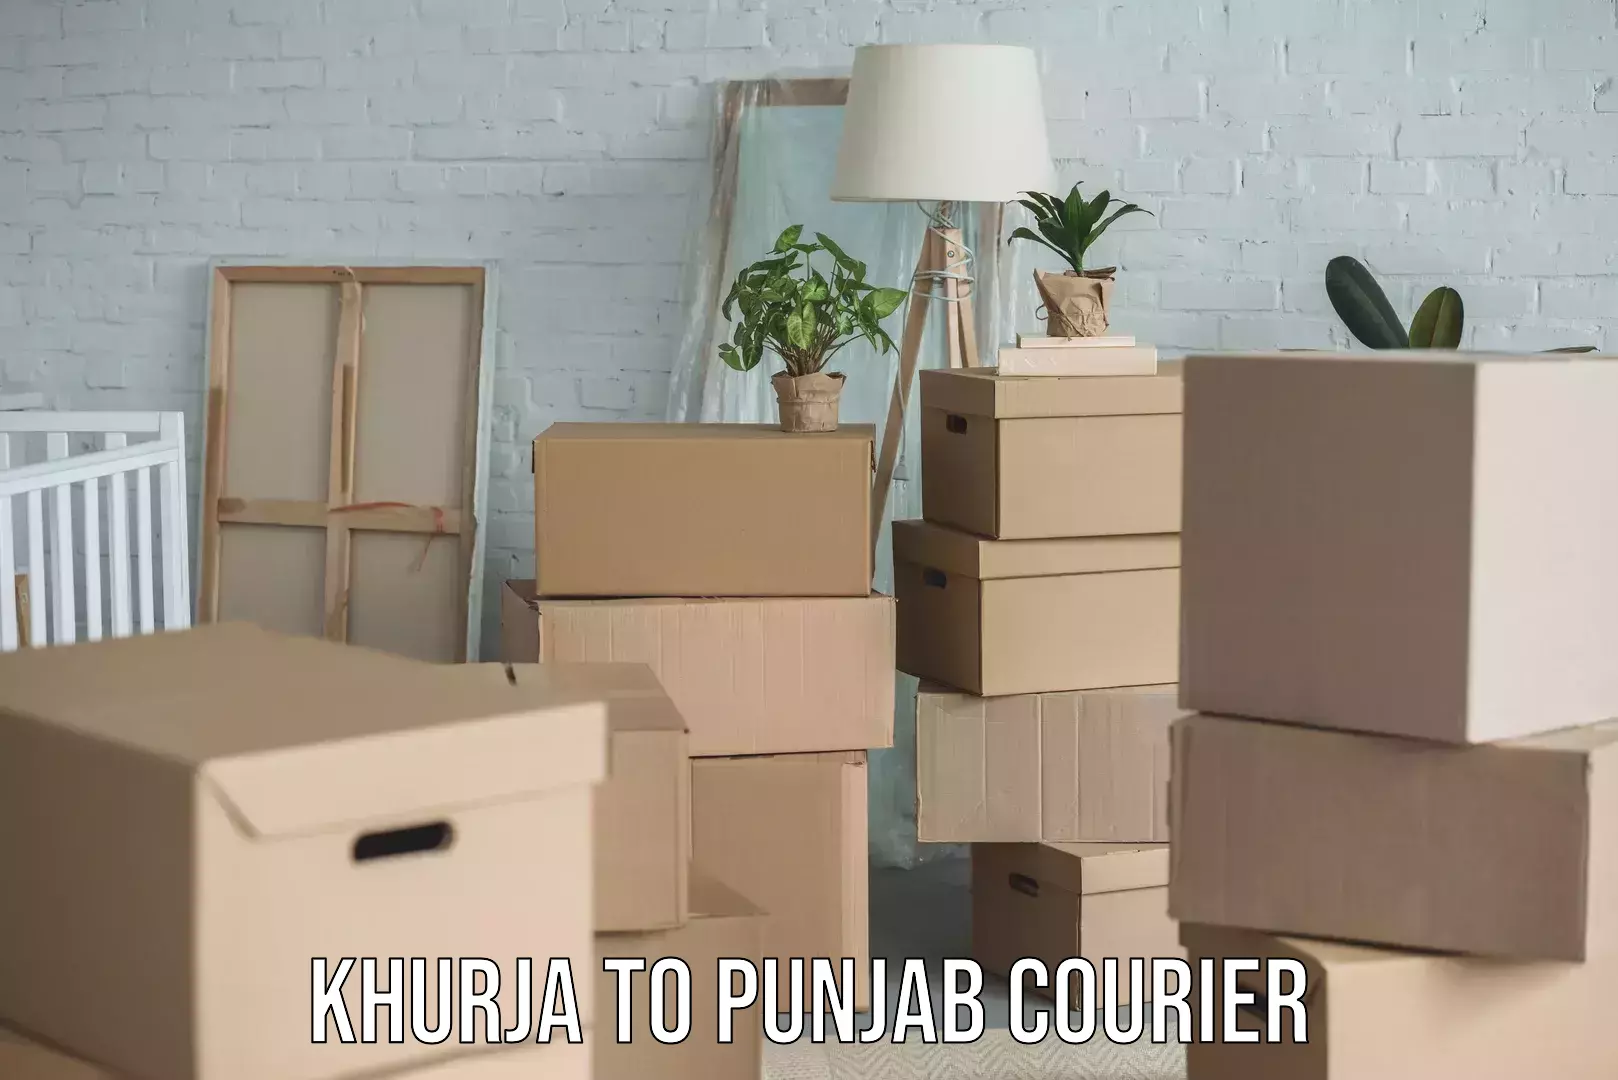 Furniture transport services Khurja to Punjab